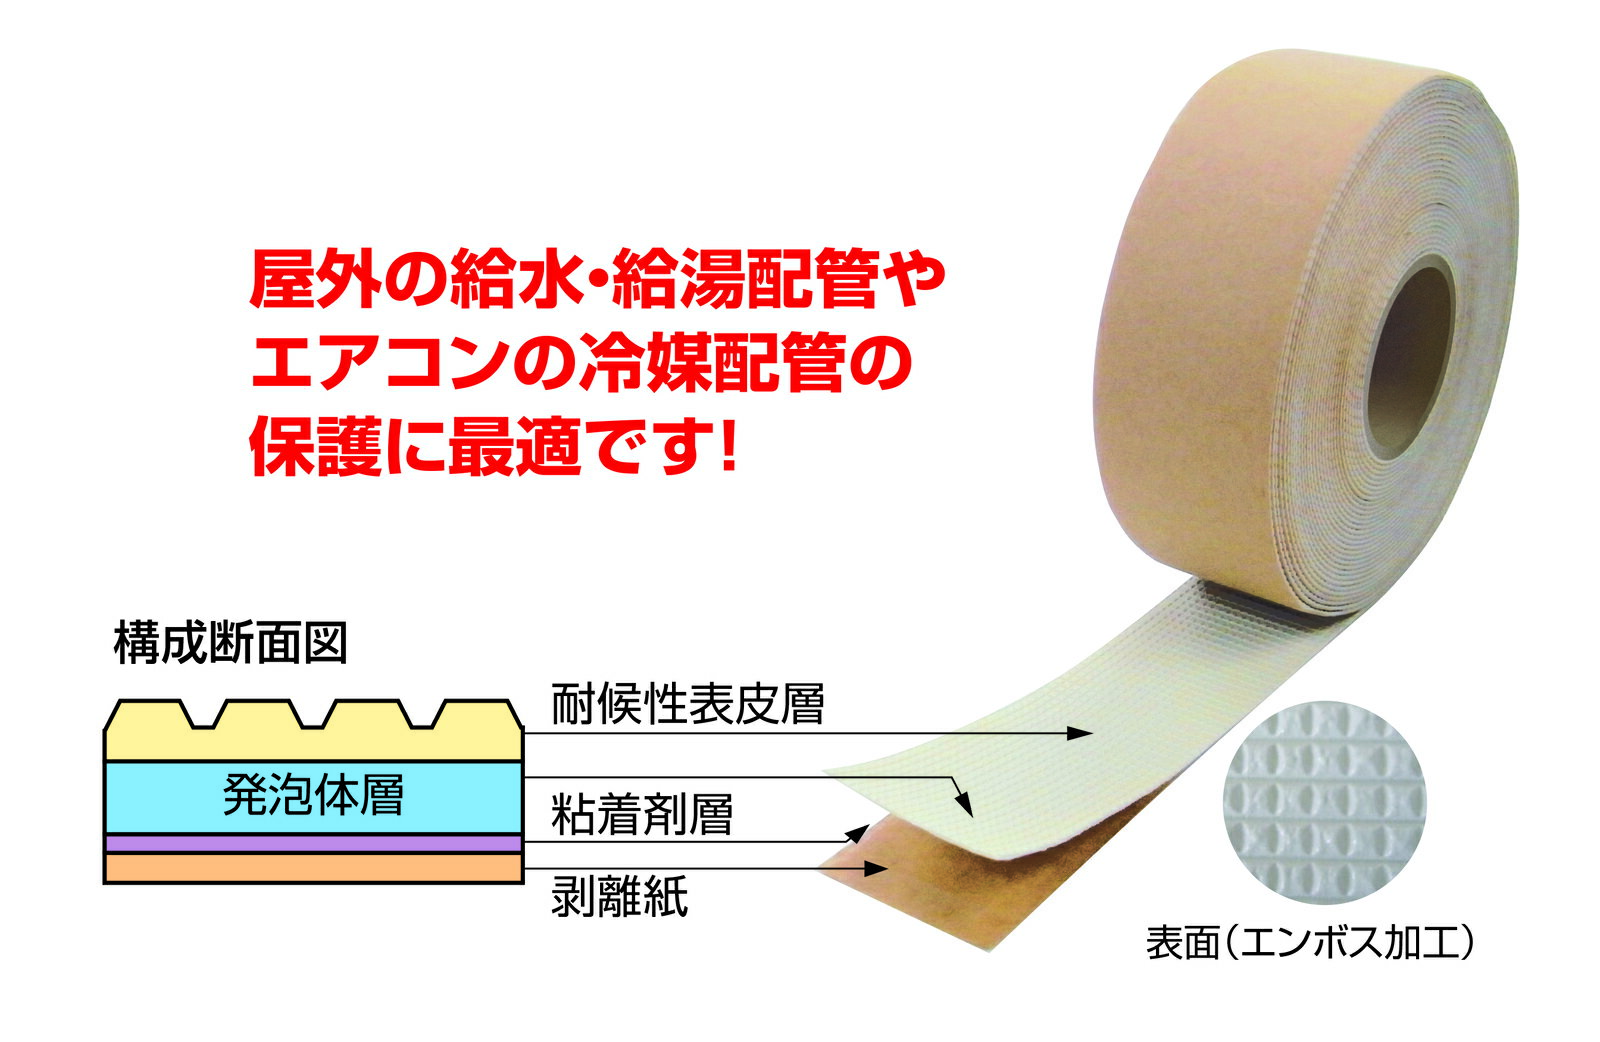 福岡三和 UVカットテープ パック品 KISS-UV50P 幅:50mm 厚み:1.1mm 長さ:10m